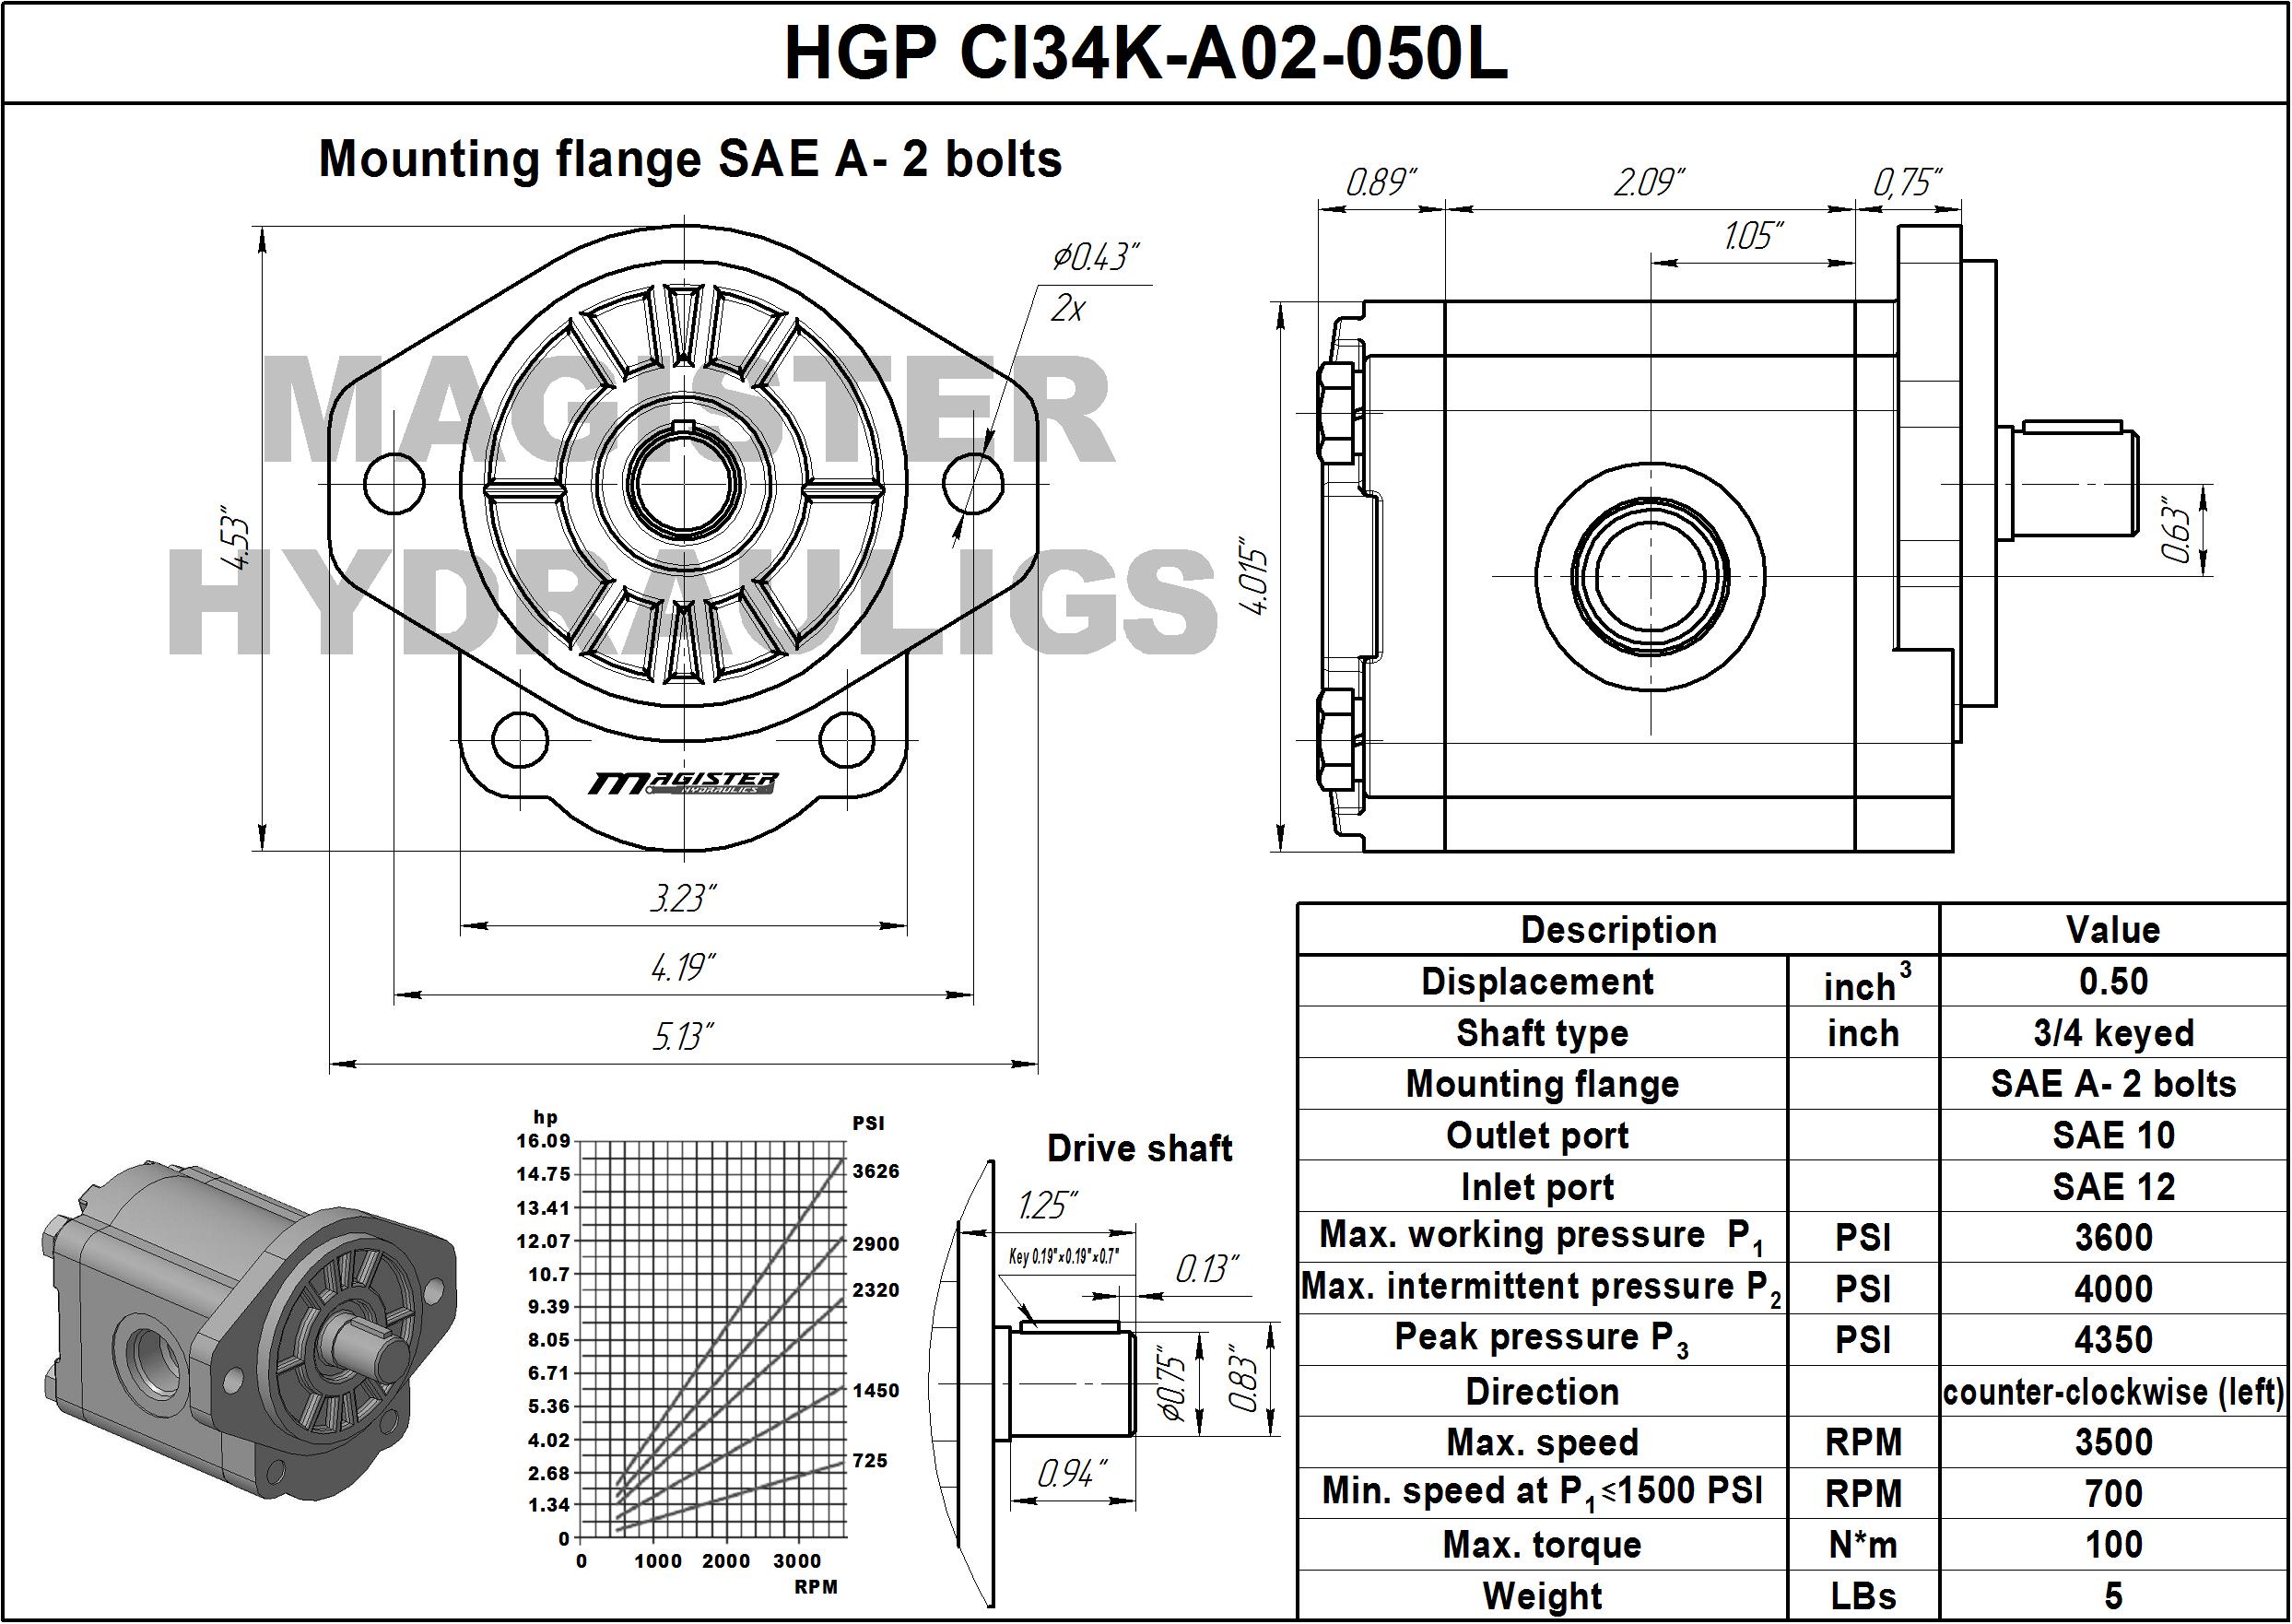 0.50 CID hydraulic gear pump, 3/4 keyed shaft counter-clockwise gear pump | Magister Hydraulics